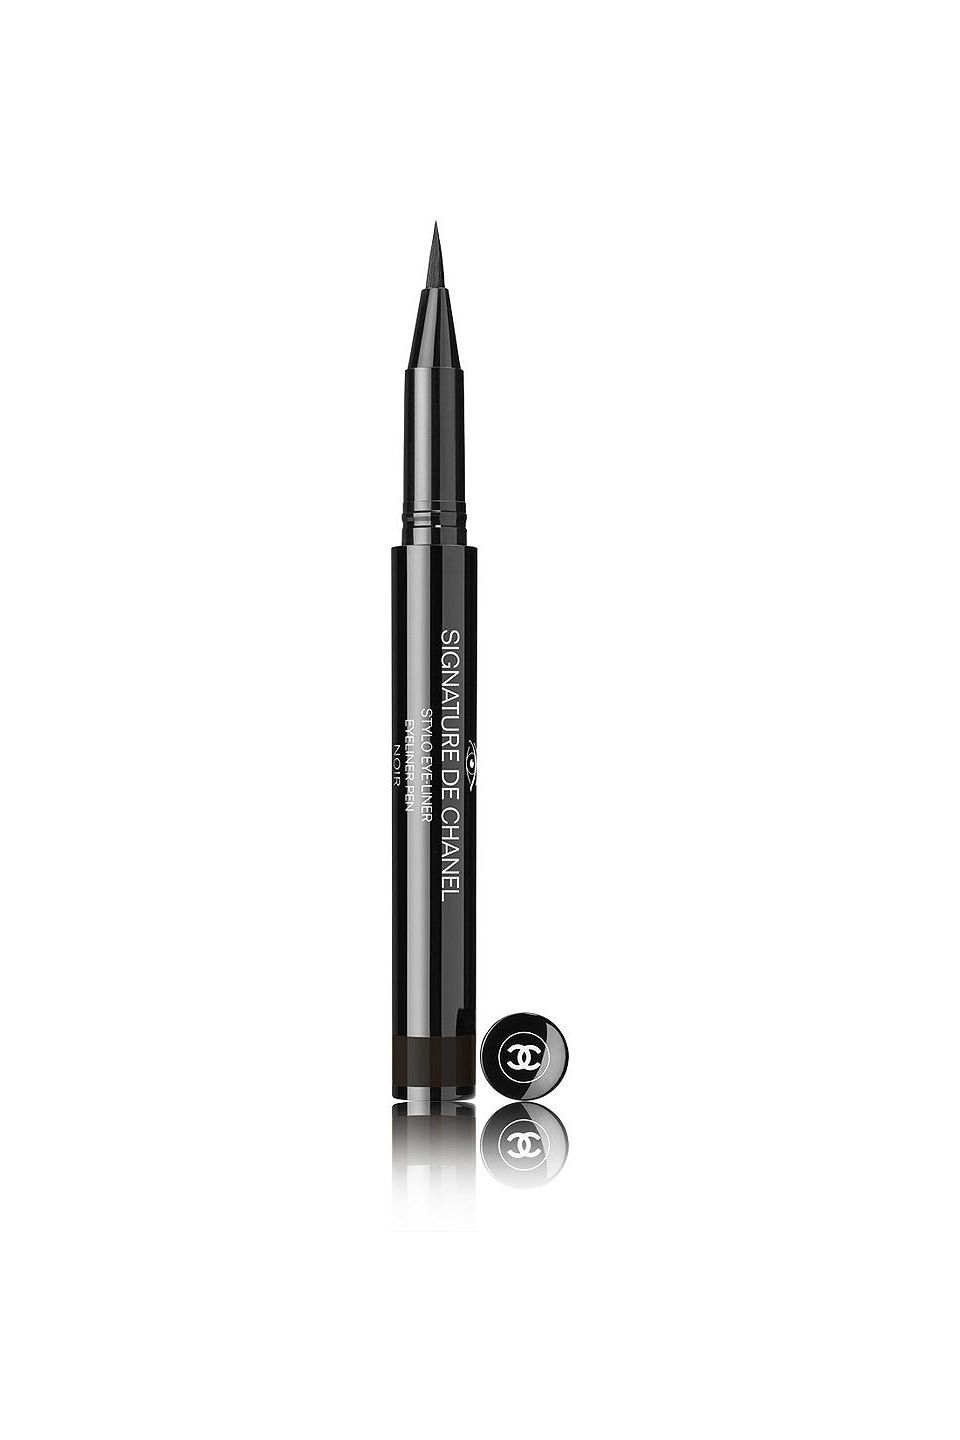 Chanel Stylo Yeux Waterproof #88 Noir Intense Eyeliner for Women 0.3 g